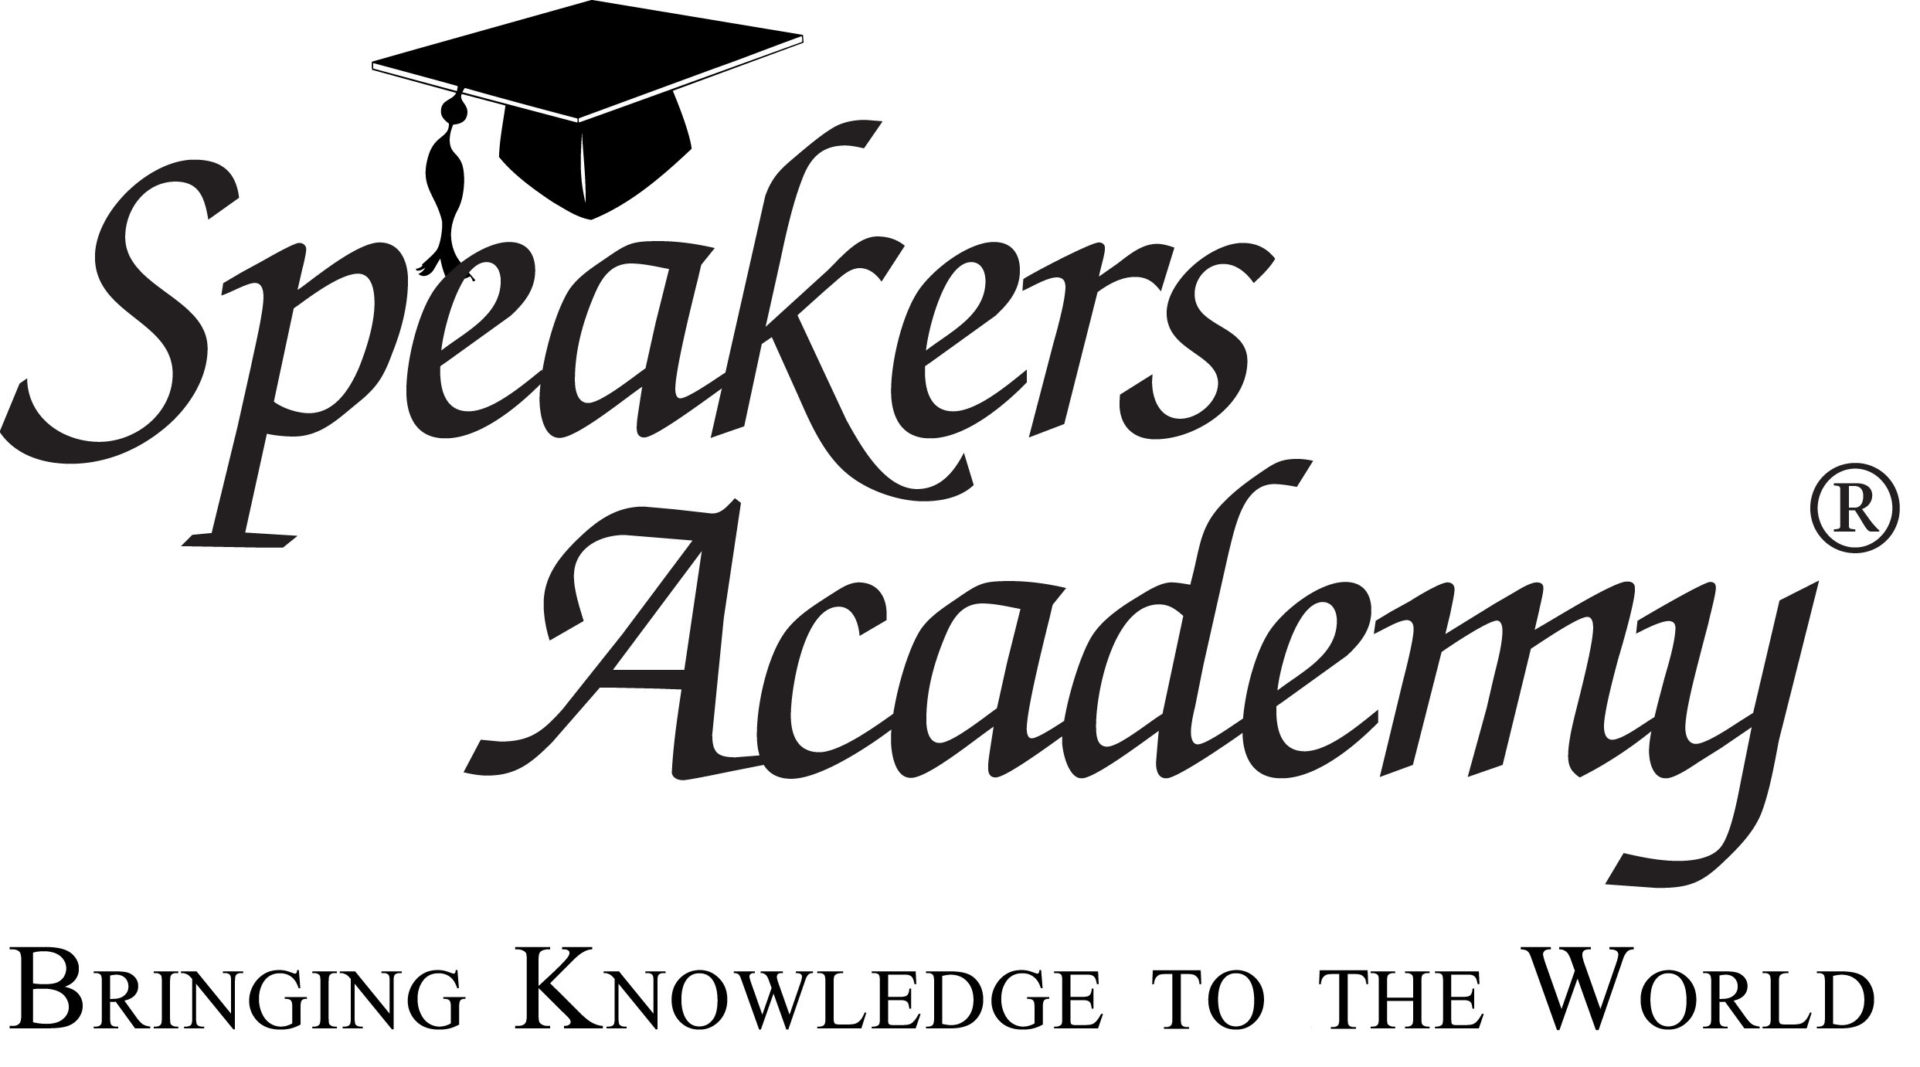 Speakers academy logo